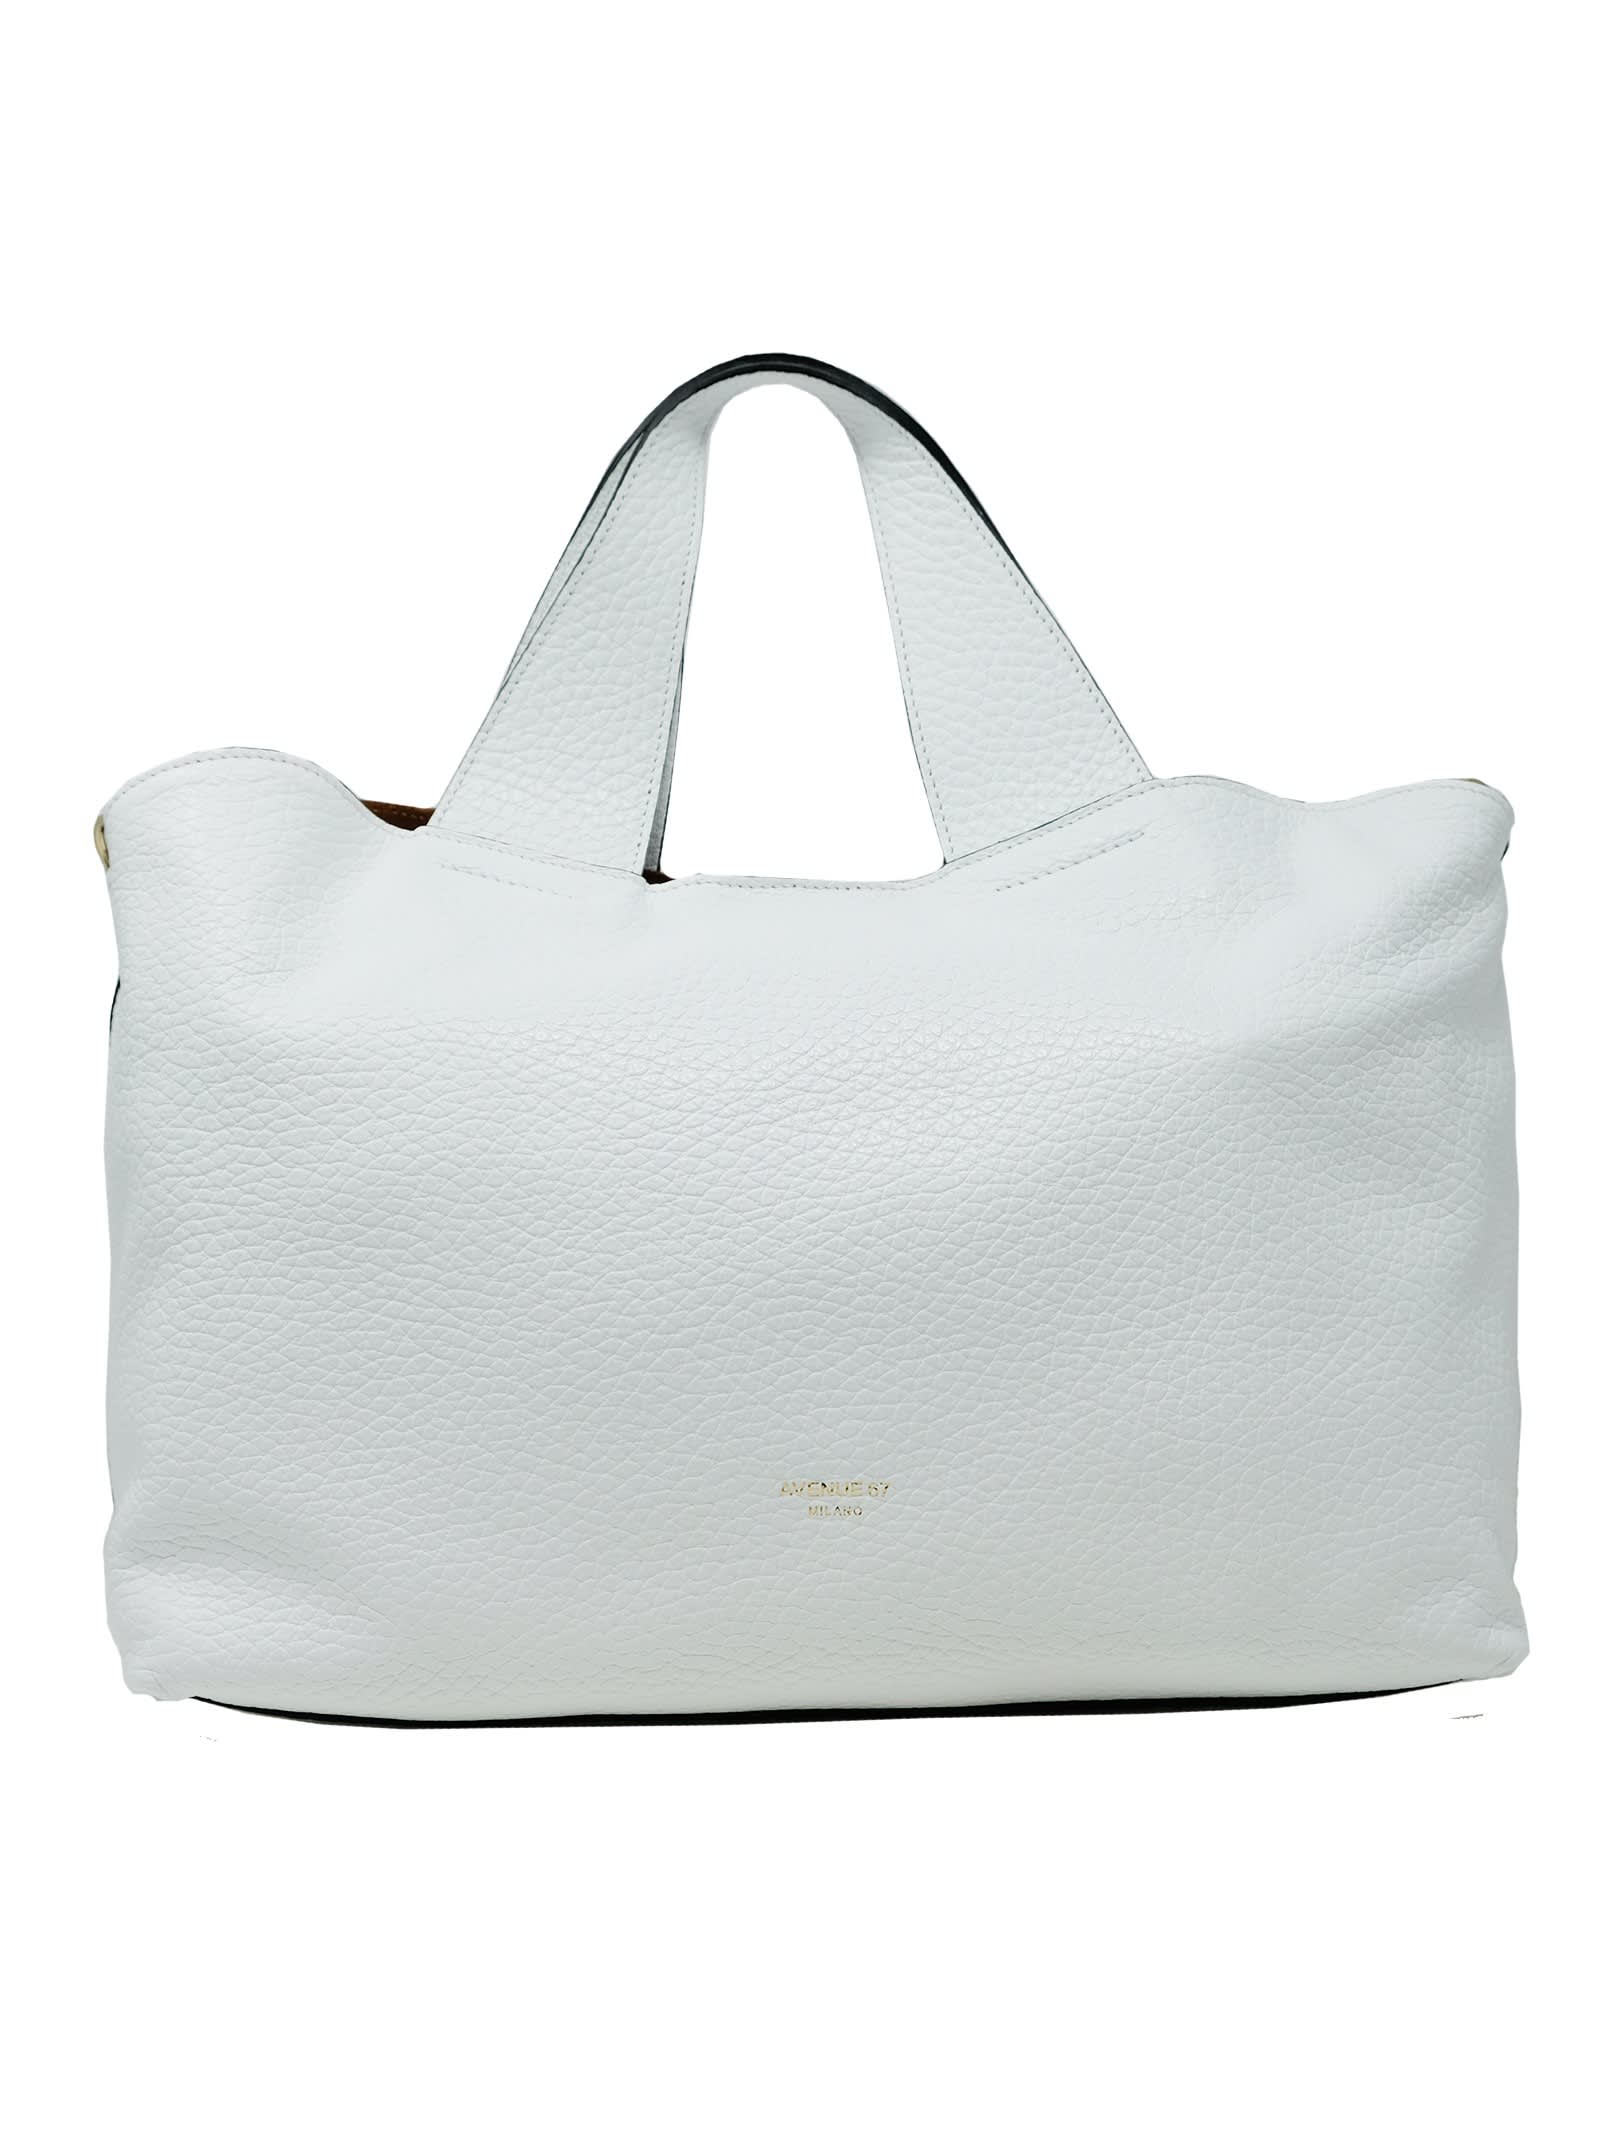 Avenue 67 Leather Elena Bag In White